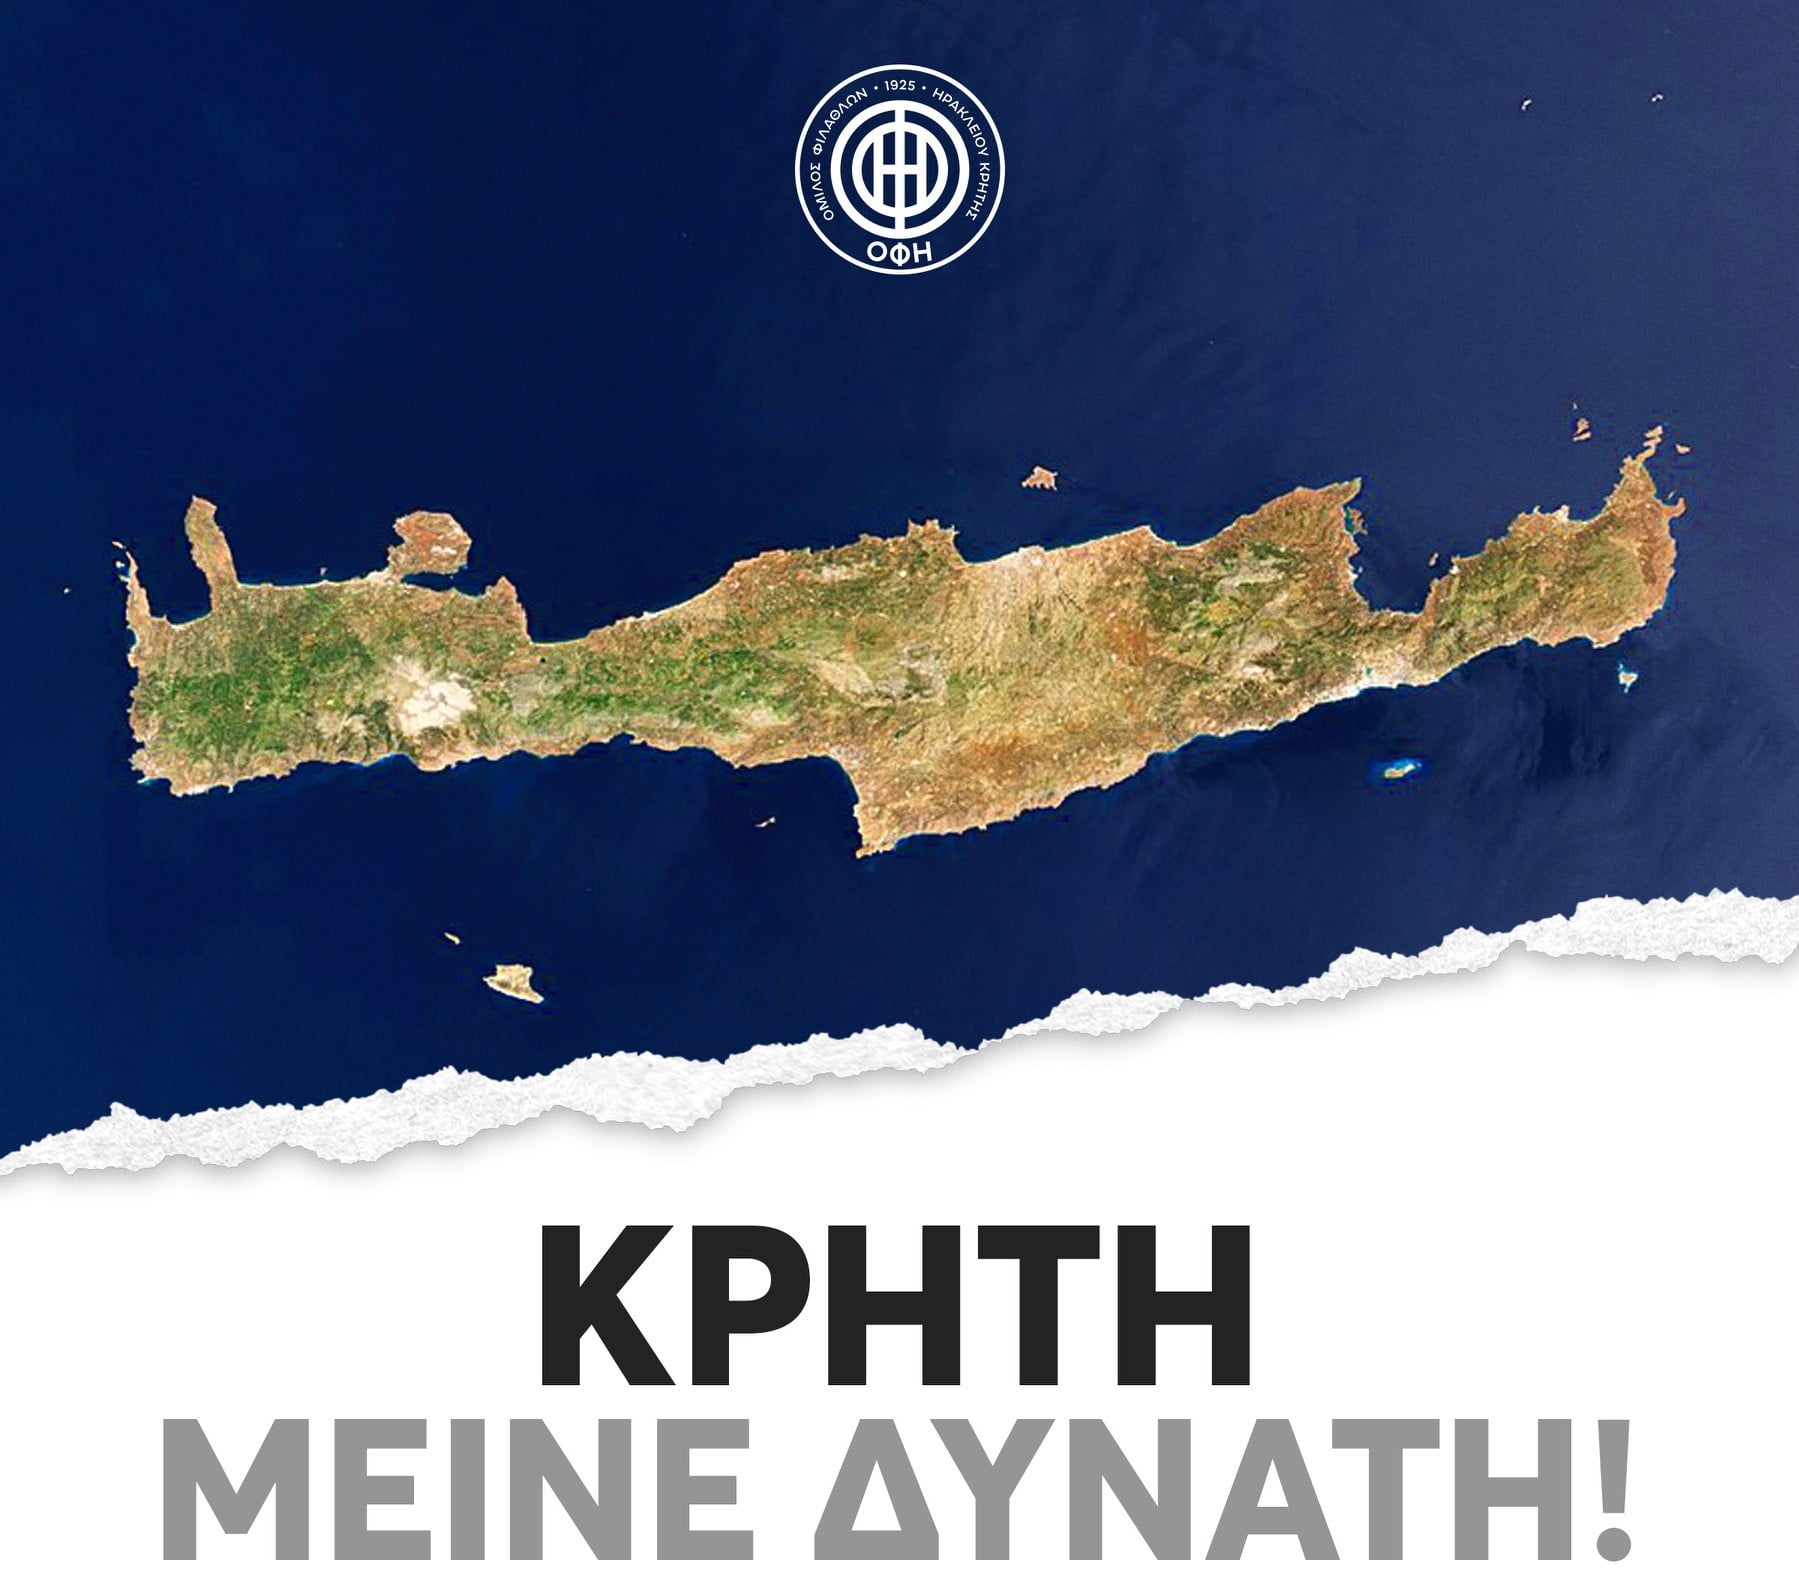 Η ΠΑΕ ΟΦΗ για τον σεισμό: «Κρήτη μείνε δυνατή»